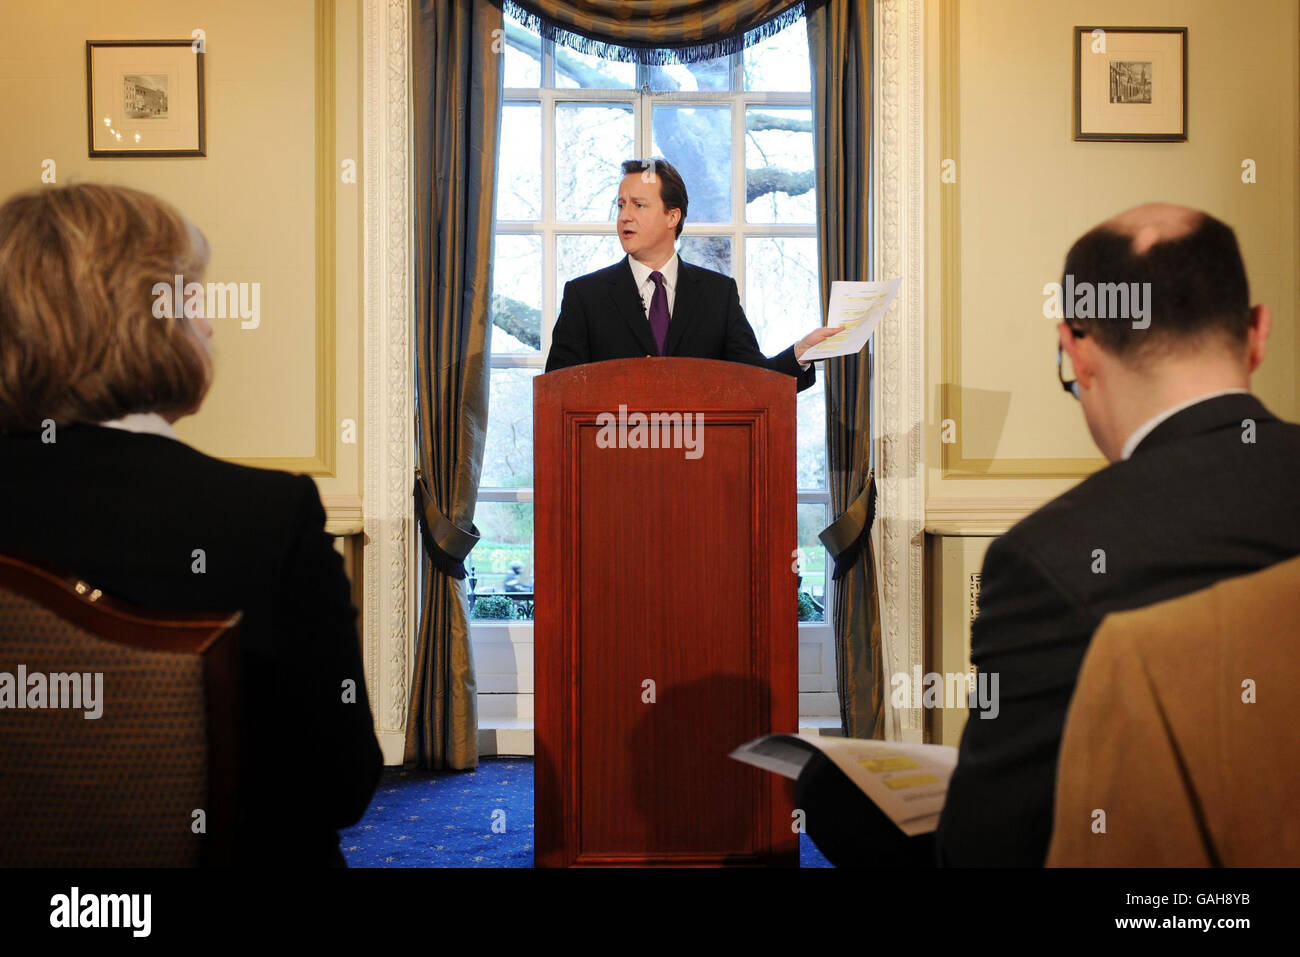 Le chef du Parti conservateur David Cameron détient une copie du nouveau formulaire qu'il a annoncé aujourd'hui lors d'une conférence de presse que ses bancs de front devront remplir pour déclarer les détails de tous les membres de la famille qu'ils emploient. Banque D'Images